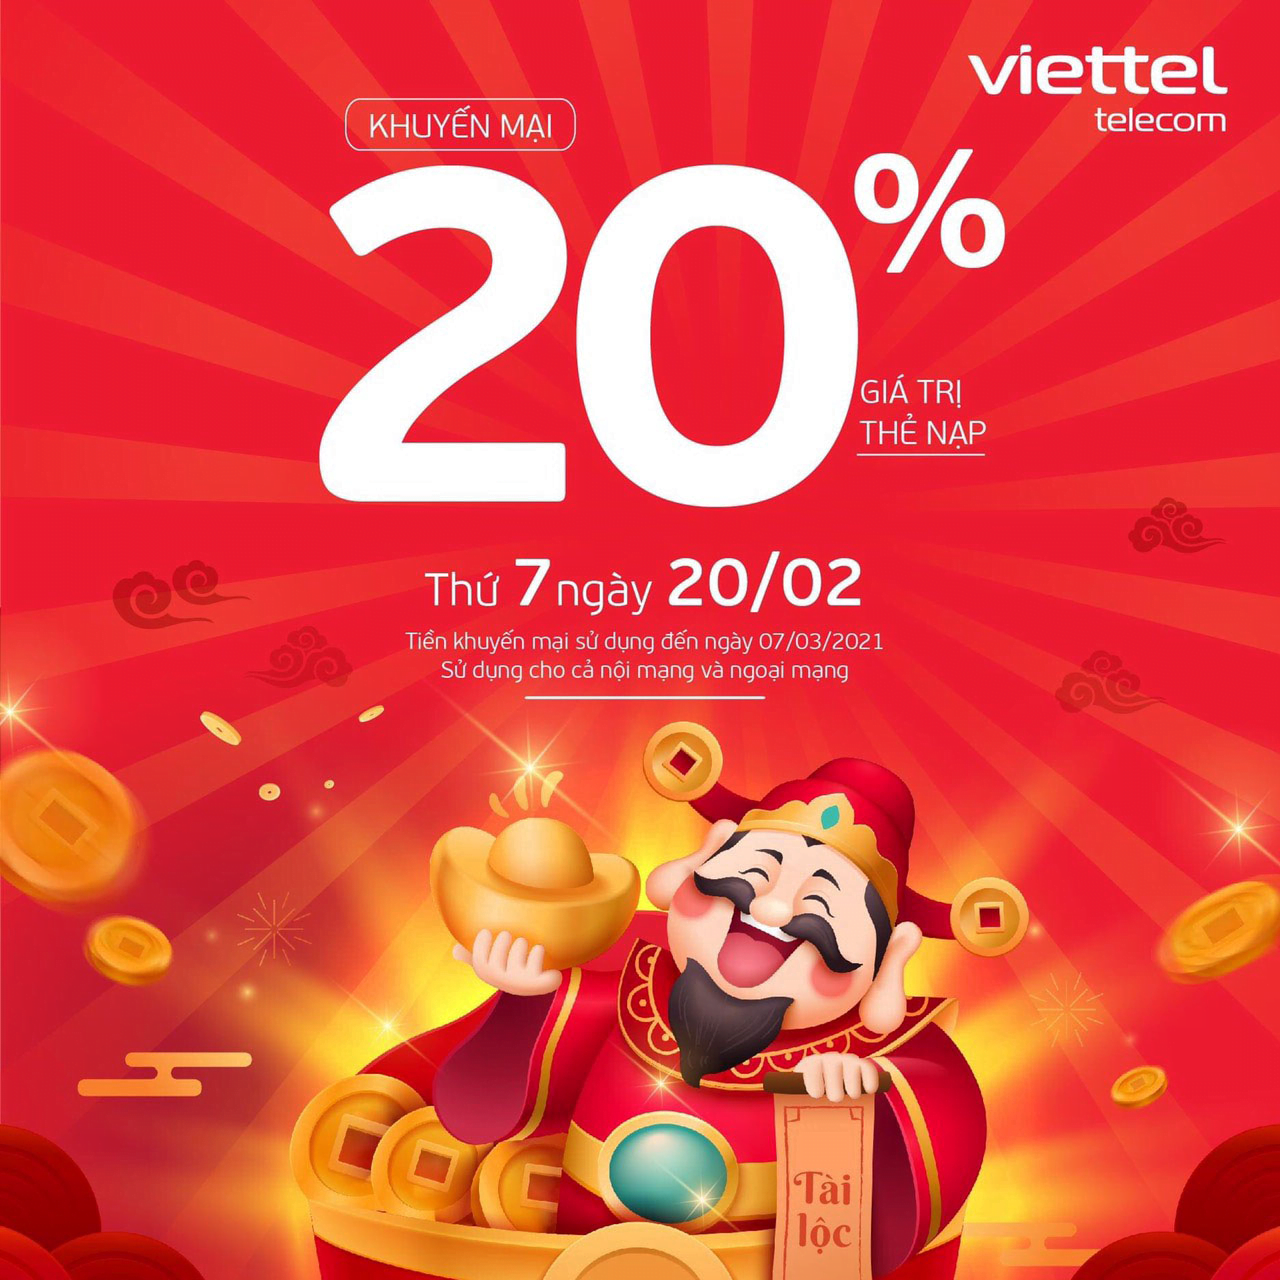 Ngày 20/02/2021, Viettel tặng 20% giá trị thẻ nạp trên toàn quốc